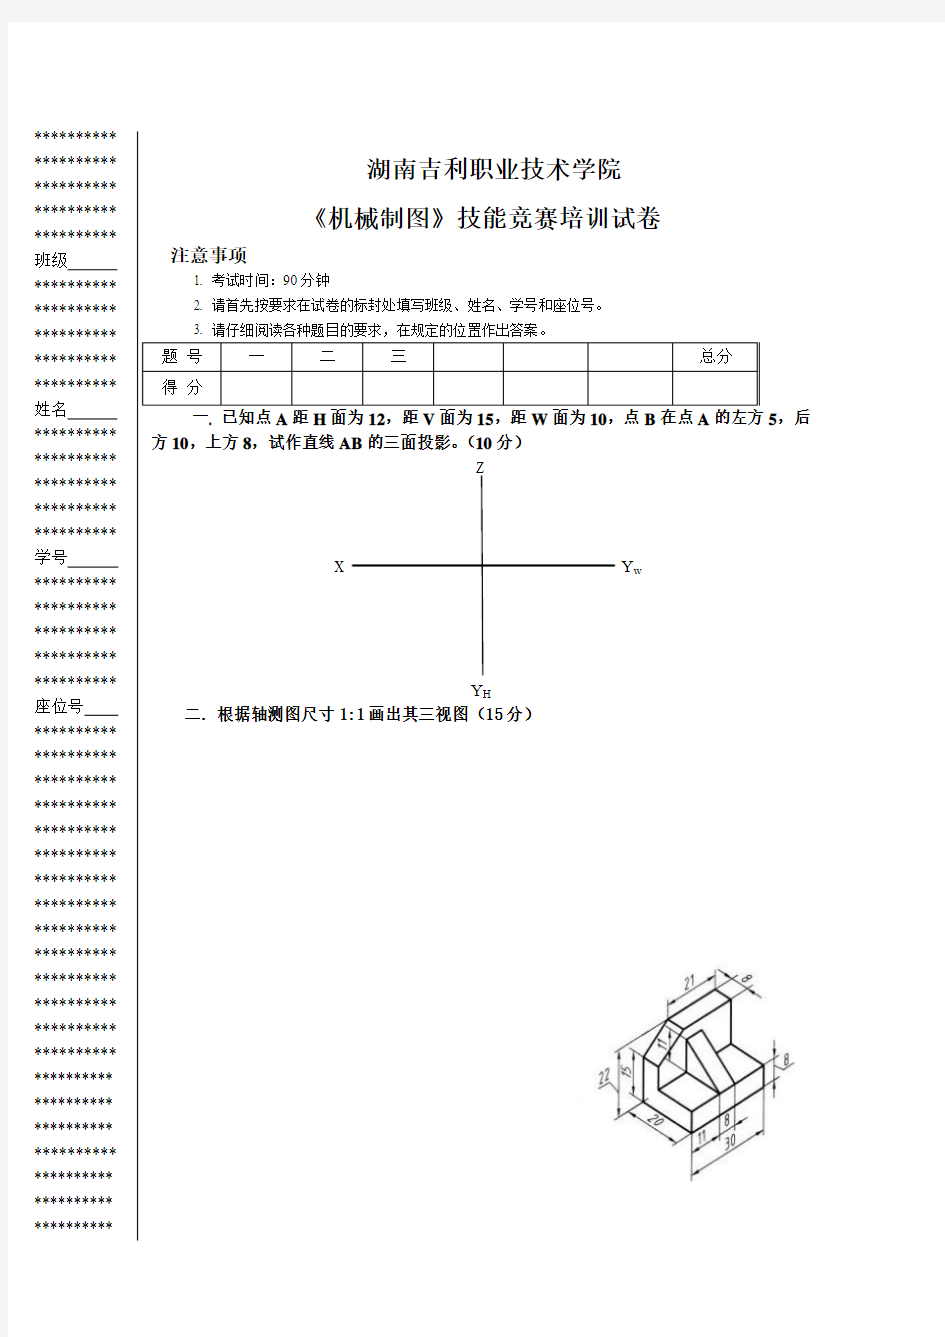 湖南汽车职院机械制图竞赛培训试卷 (1)